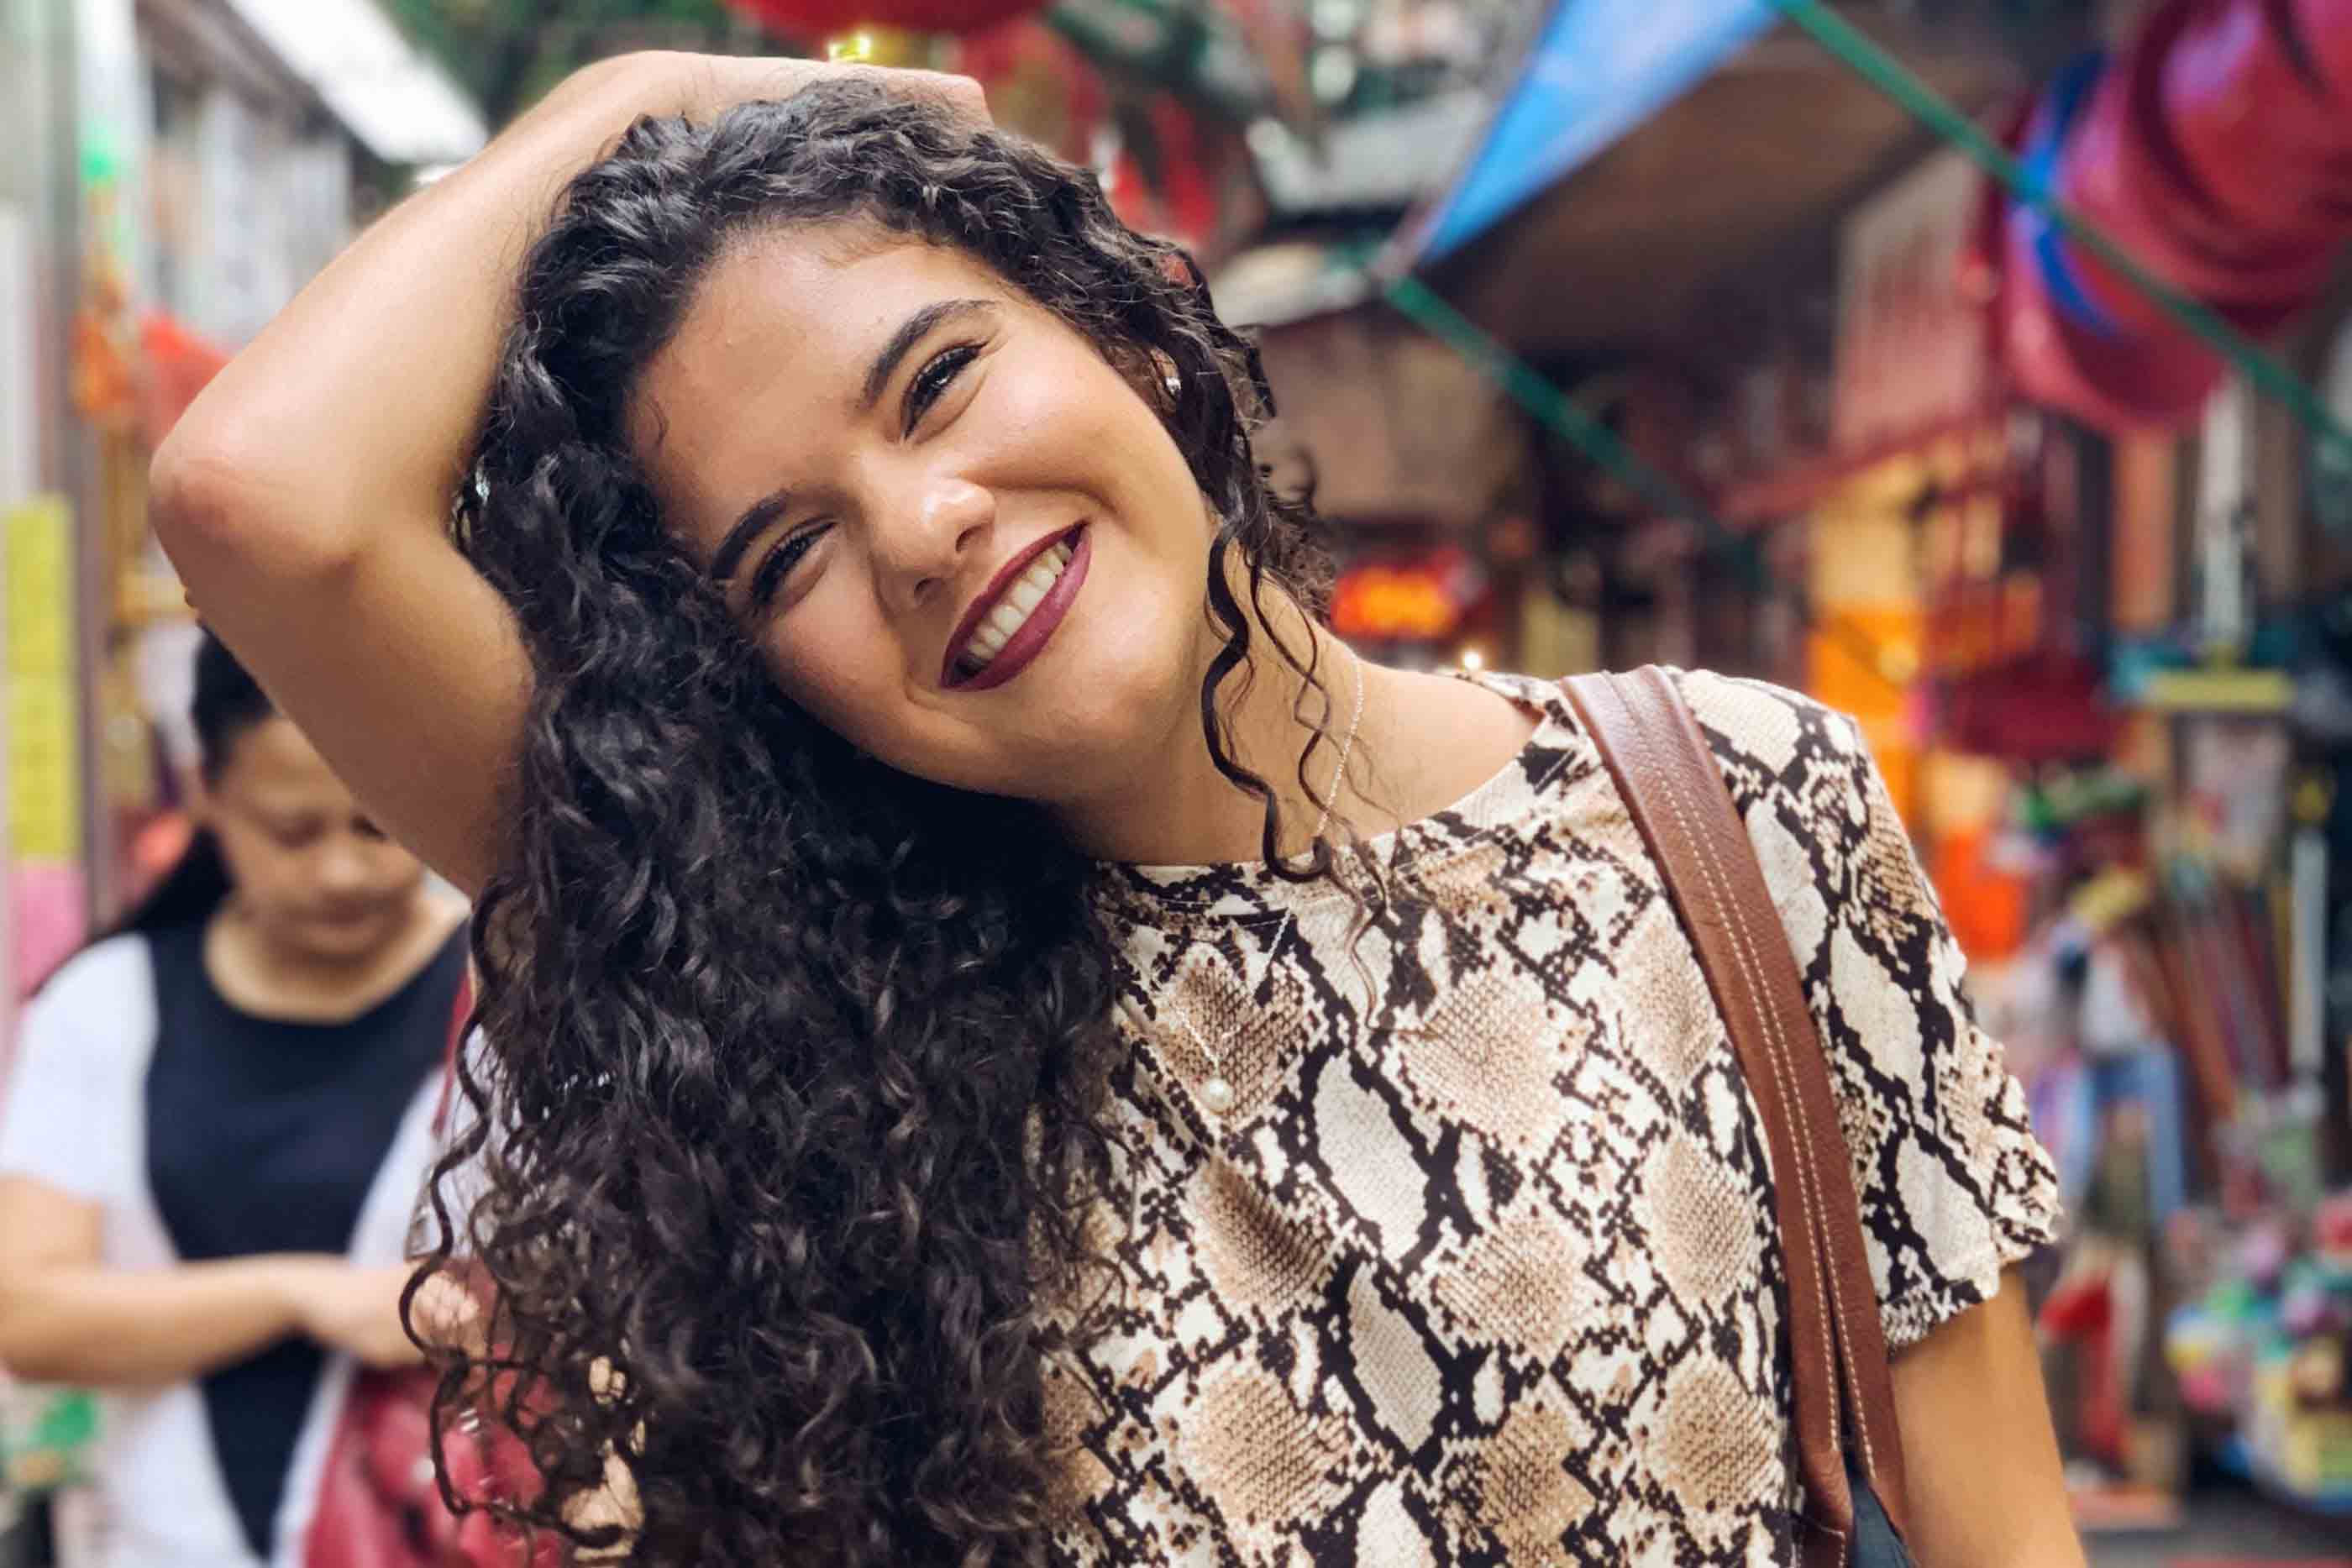 Raquel Jorge, a criadora do projeto, a sorrir num ambiente colorido